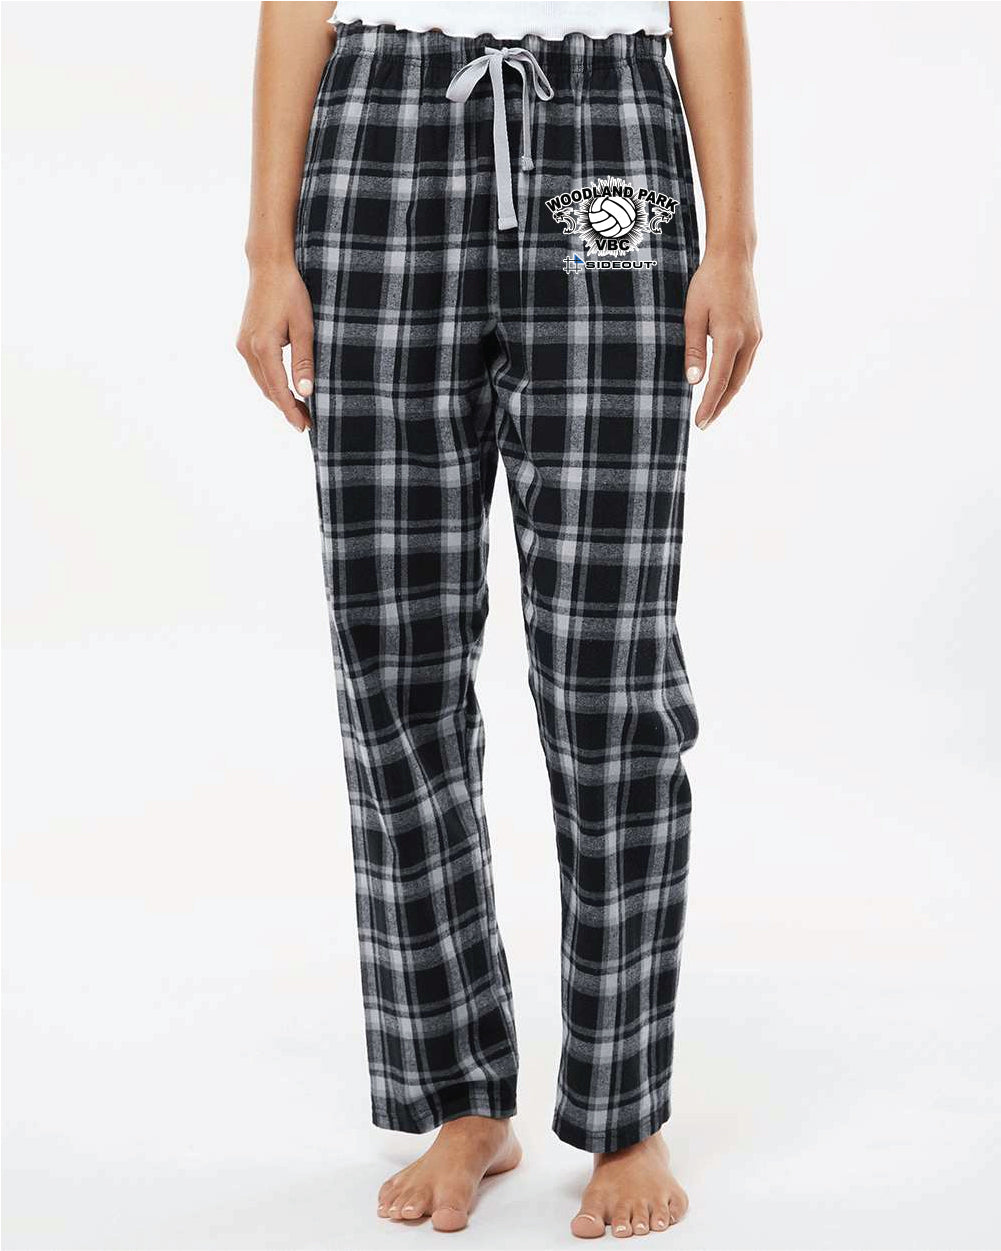 Woodland Park Pajama Pant Black